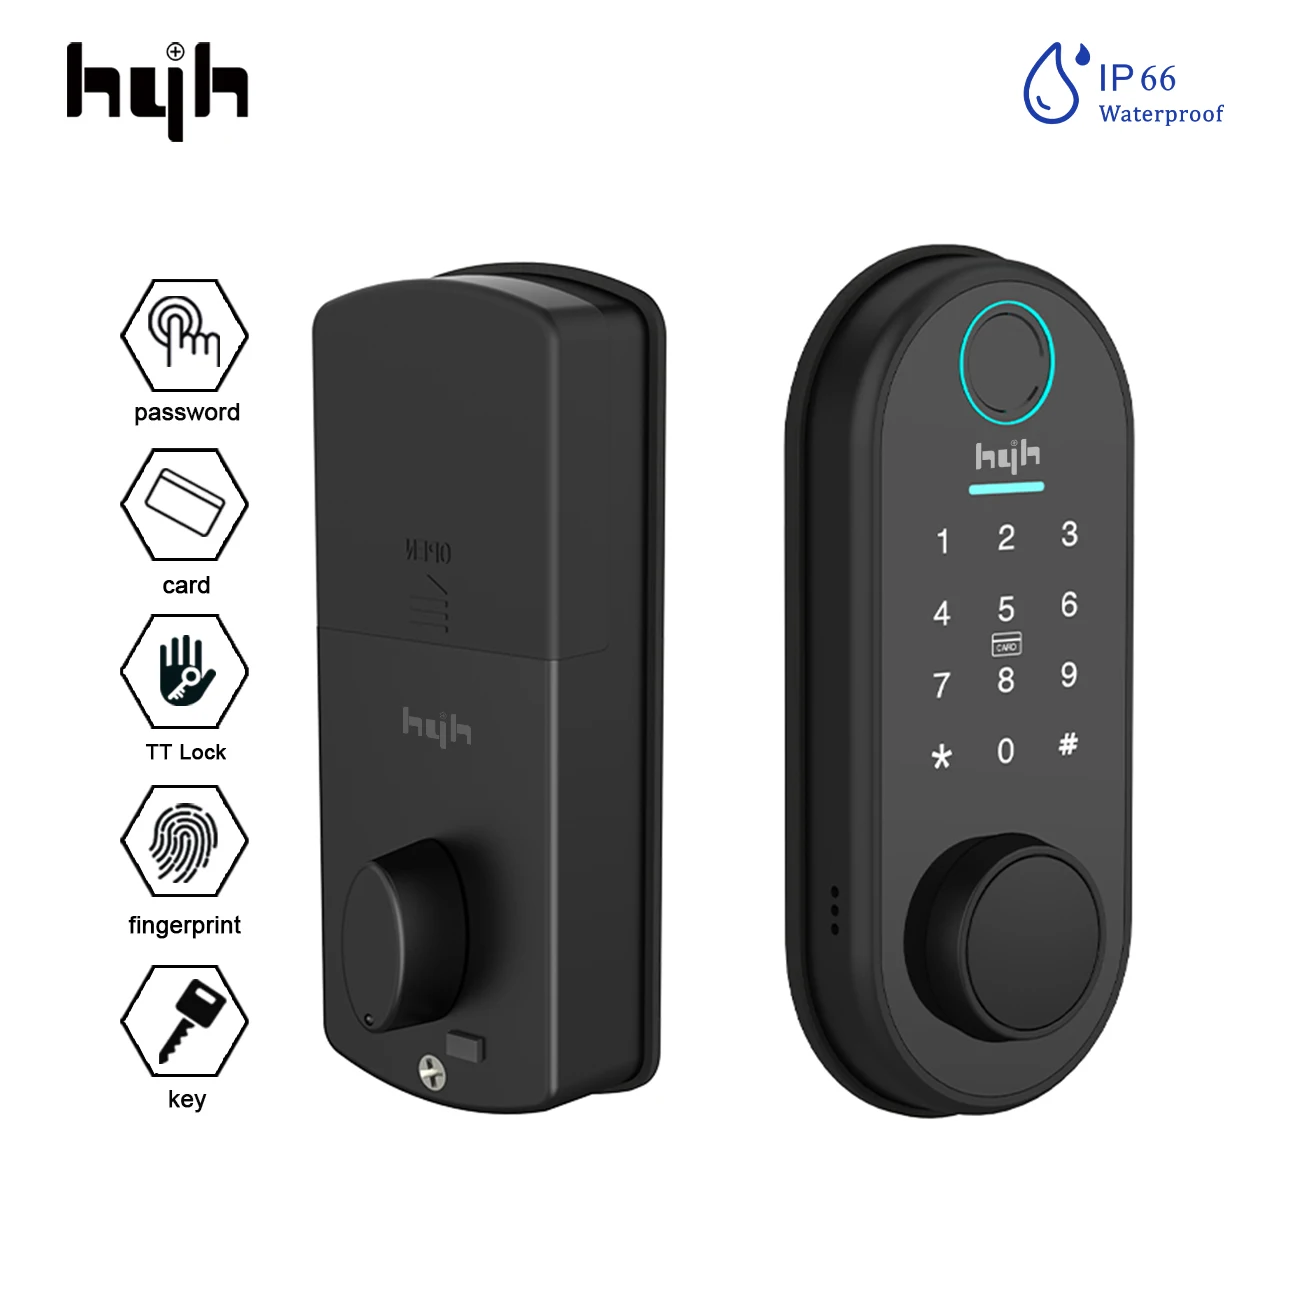 

Умный дверной замок hyh со сканером отпечатков пальцев, замок TTLock с Bluetooth для входной двери, с RFID-картой и паролем, цифровой замок для входной двери